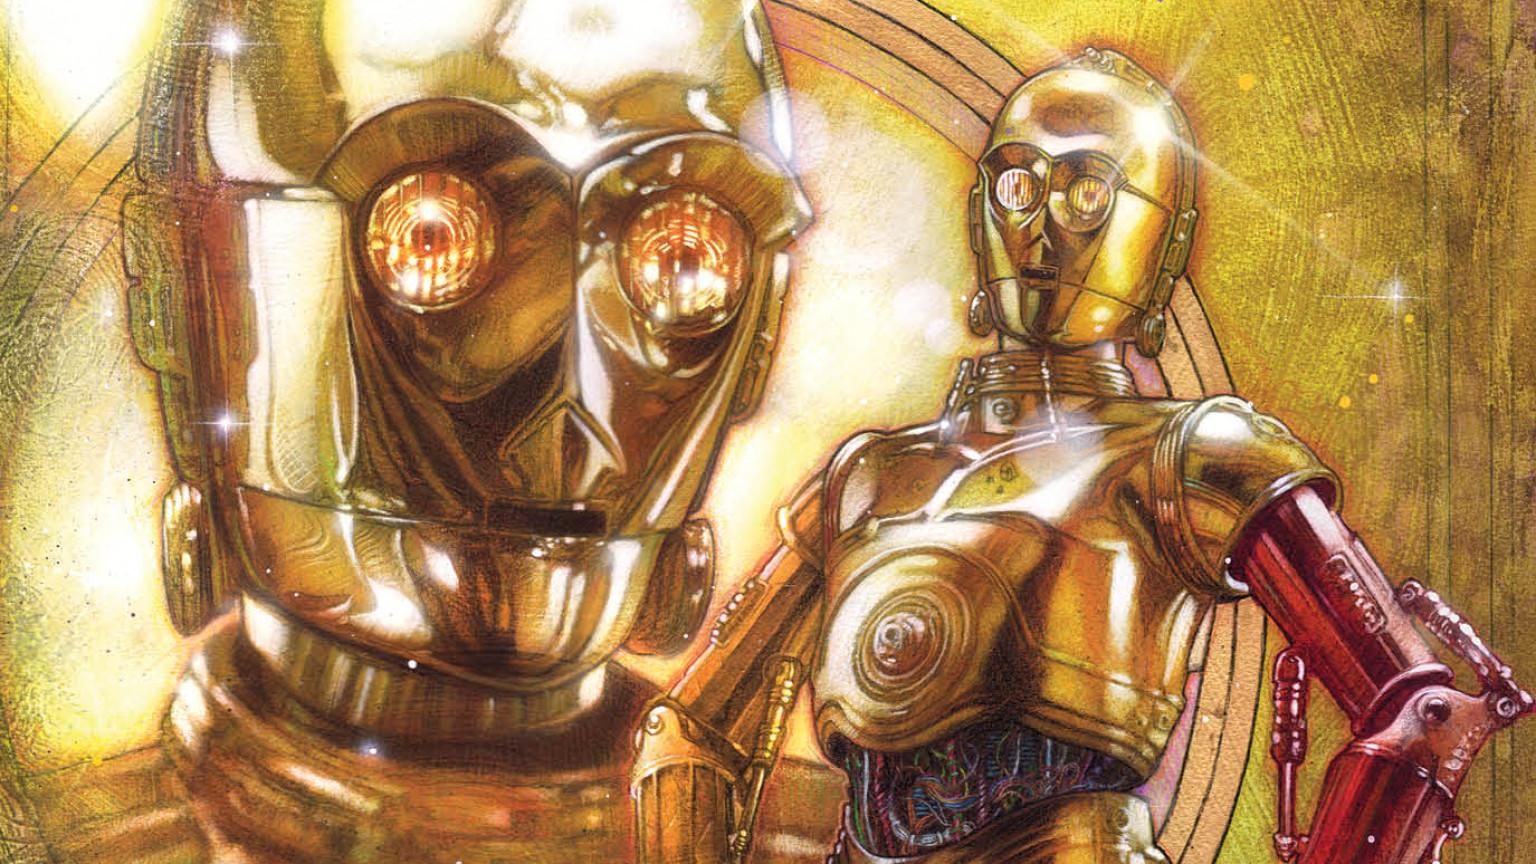 HQ traz a explicação que você estava procurando para o braço diferente de C-3PO